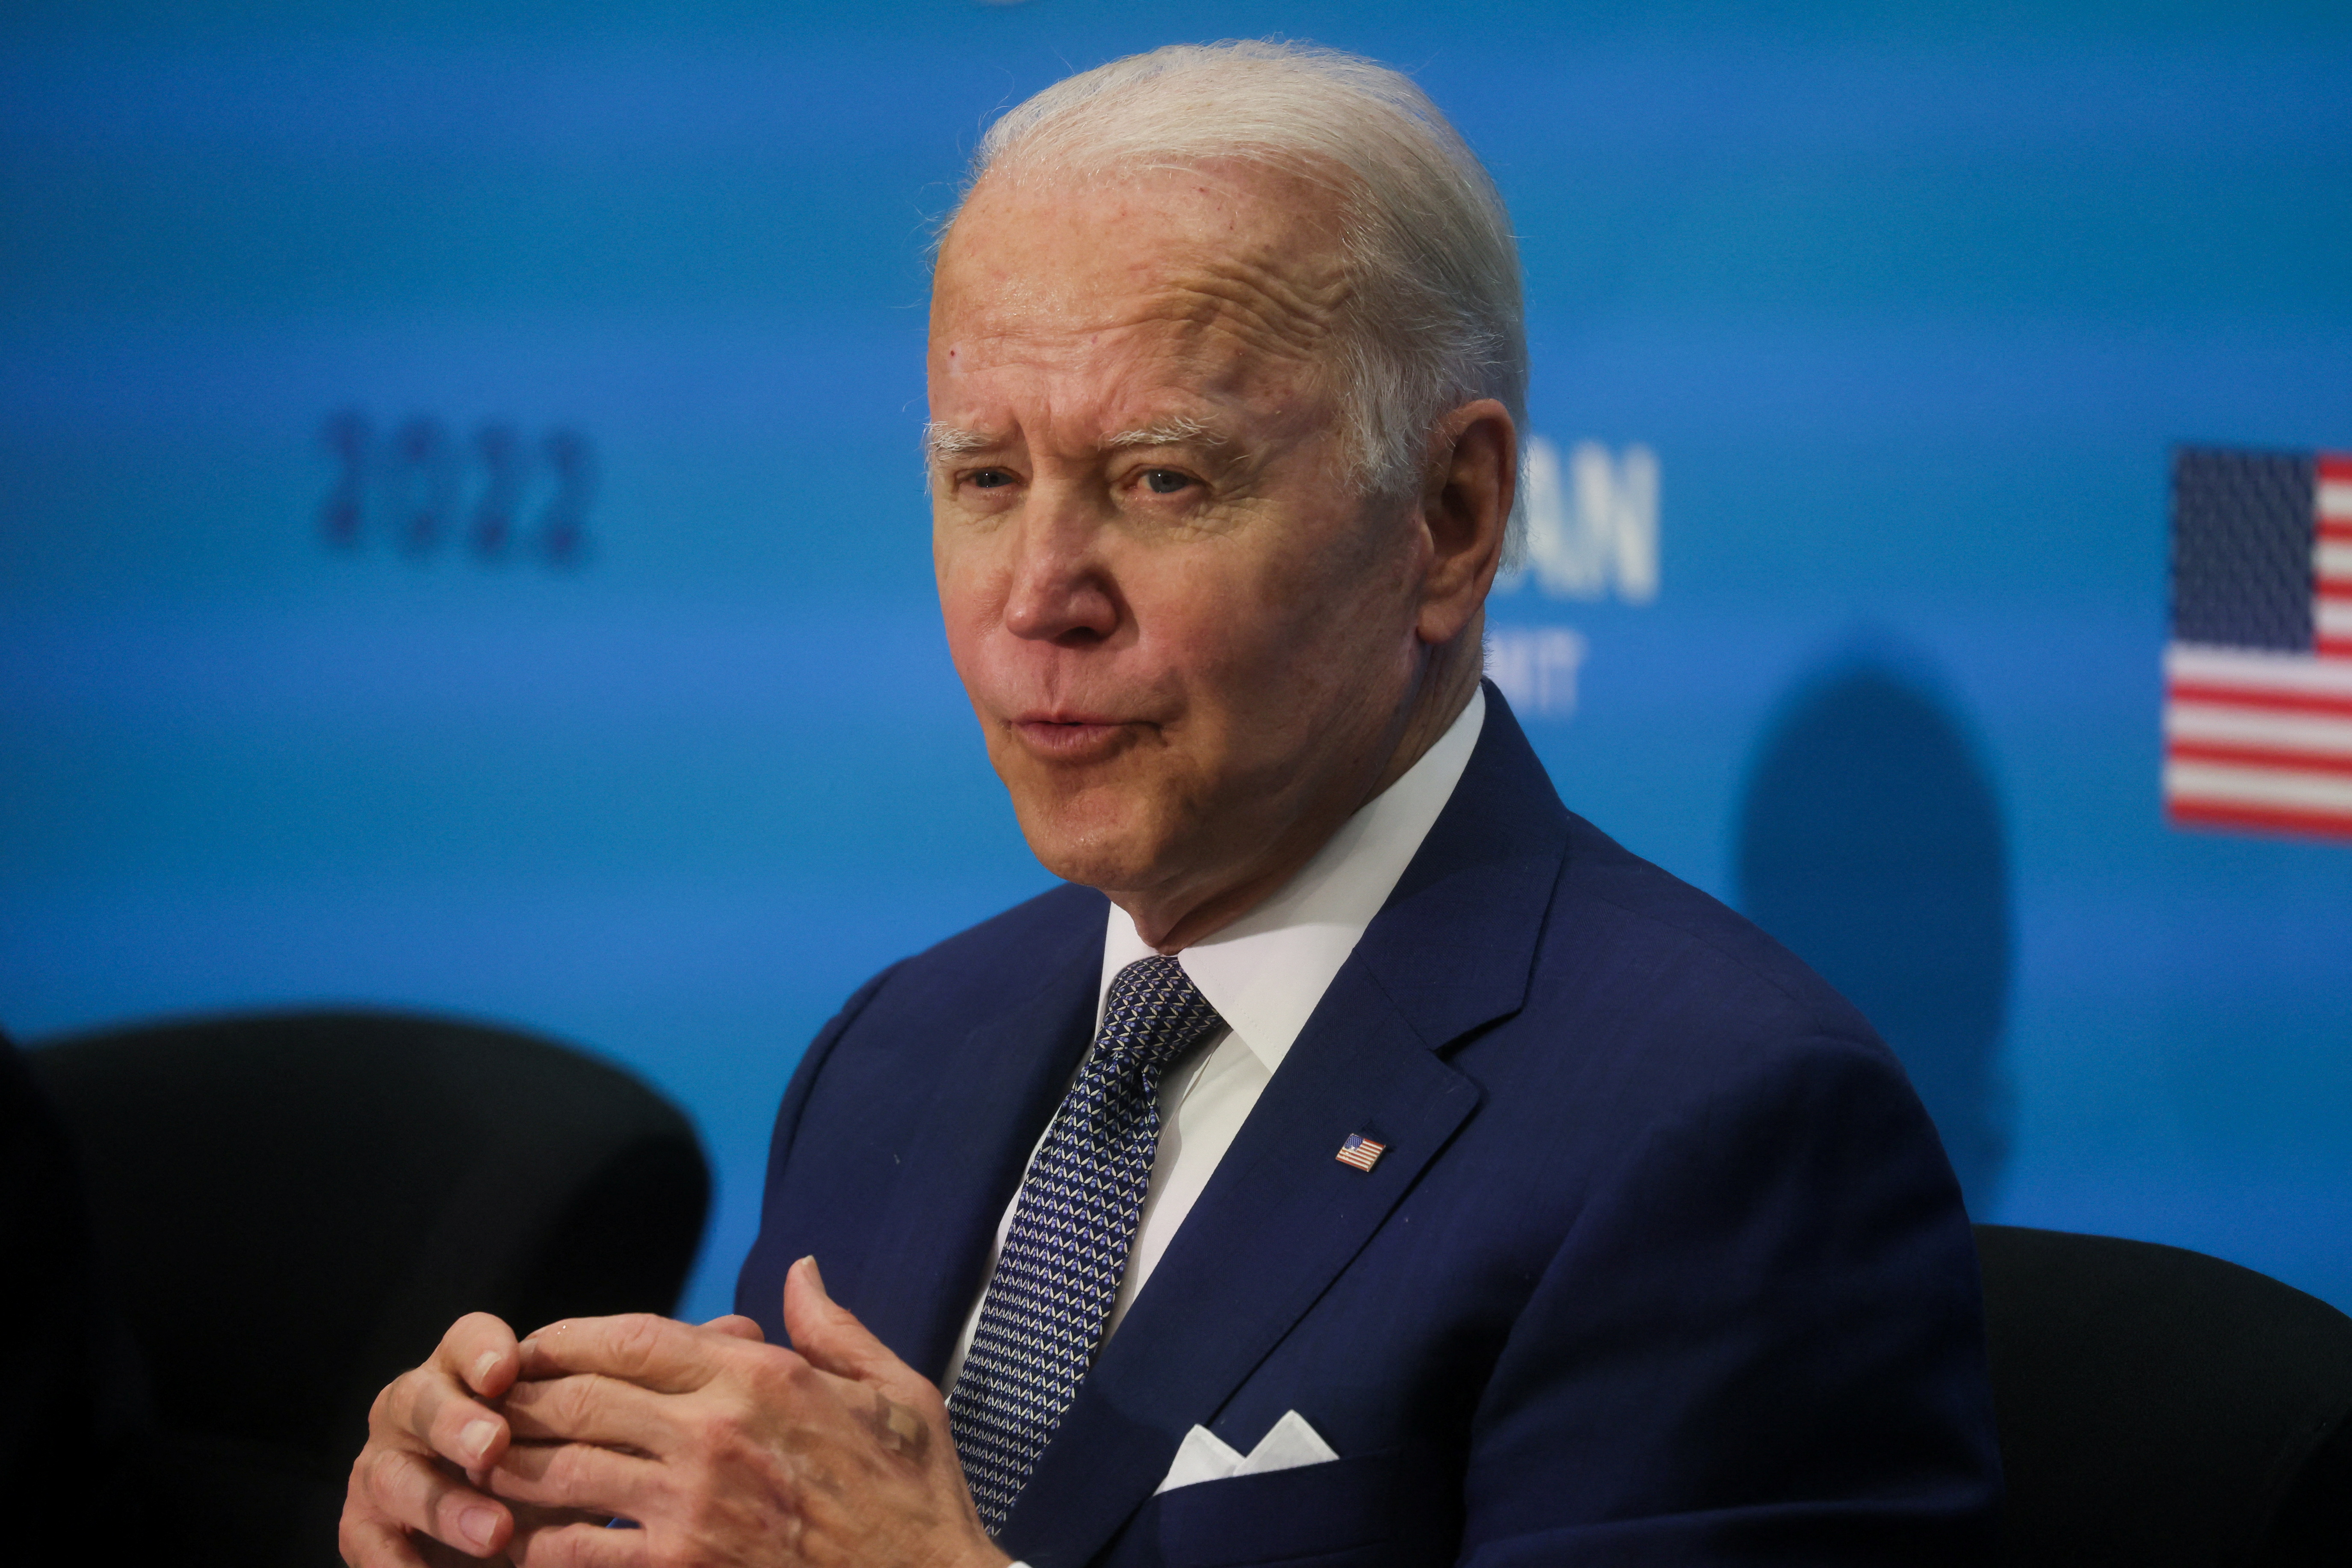 El presidente de Estados Unidos, Joe Biden, pronuncia un discurso durante la cumbre especial entre Estados Unidos y la ASEAN en el Departamento de Estado de Estados Unidos, en Washington, Estados Unidos, el 13 de mayo de 2022. REUTERS/Leah Millis